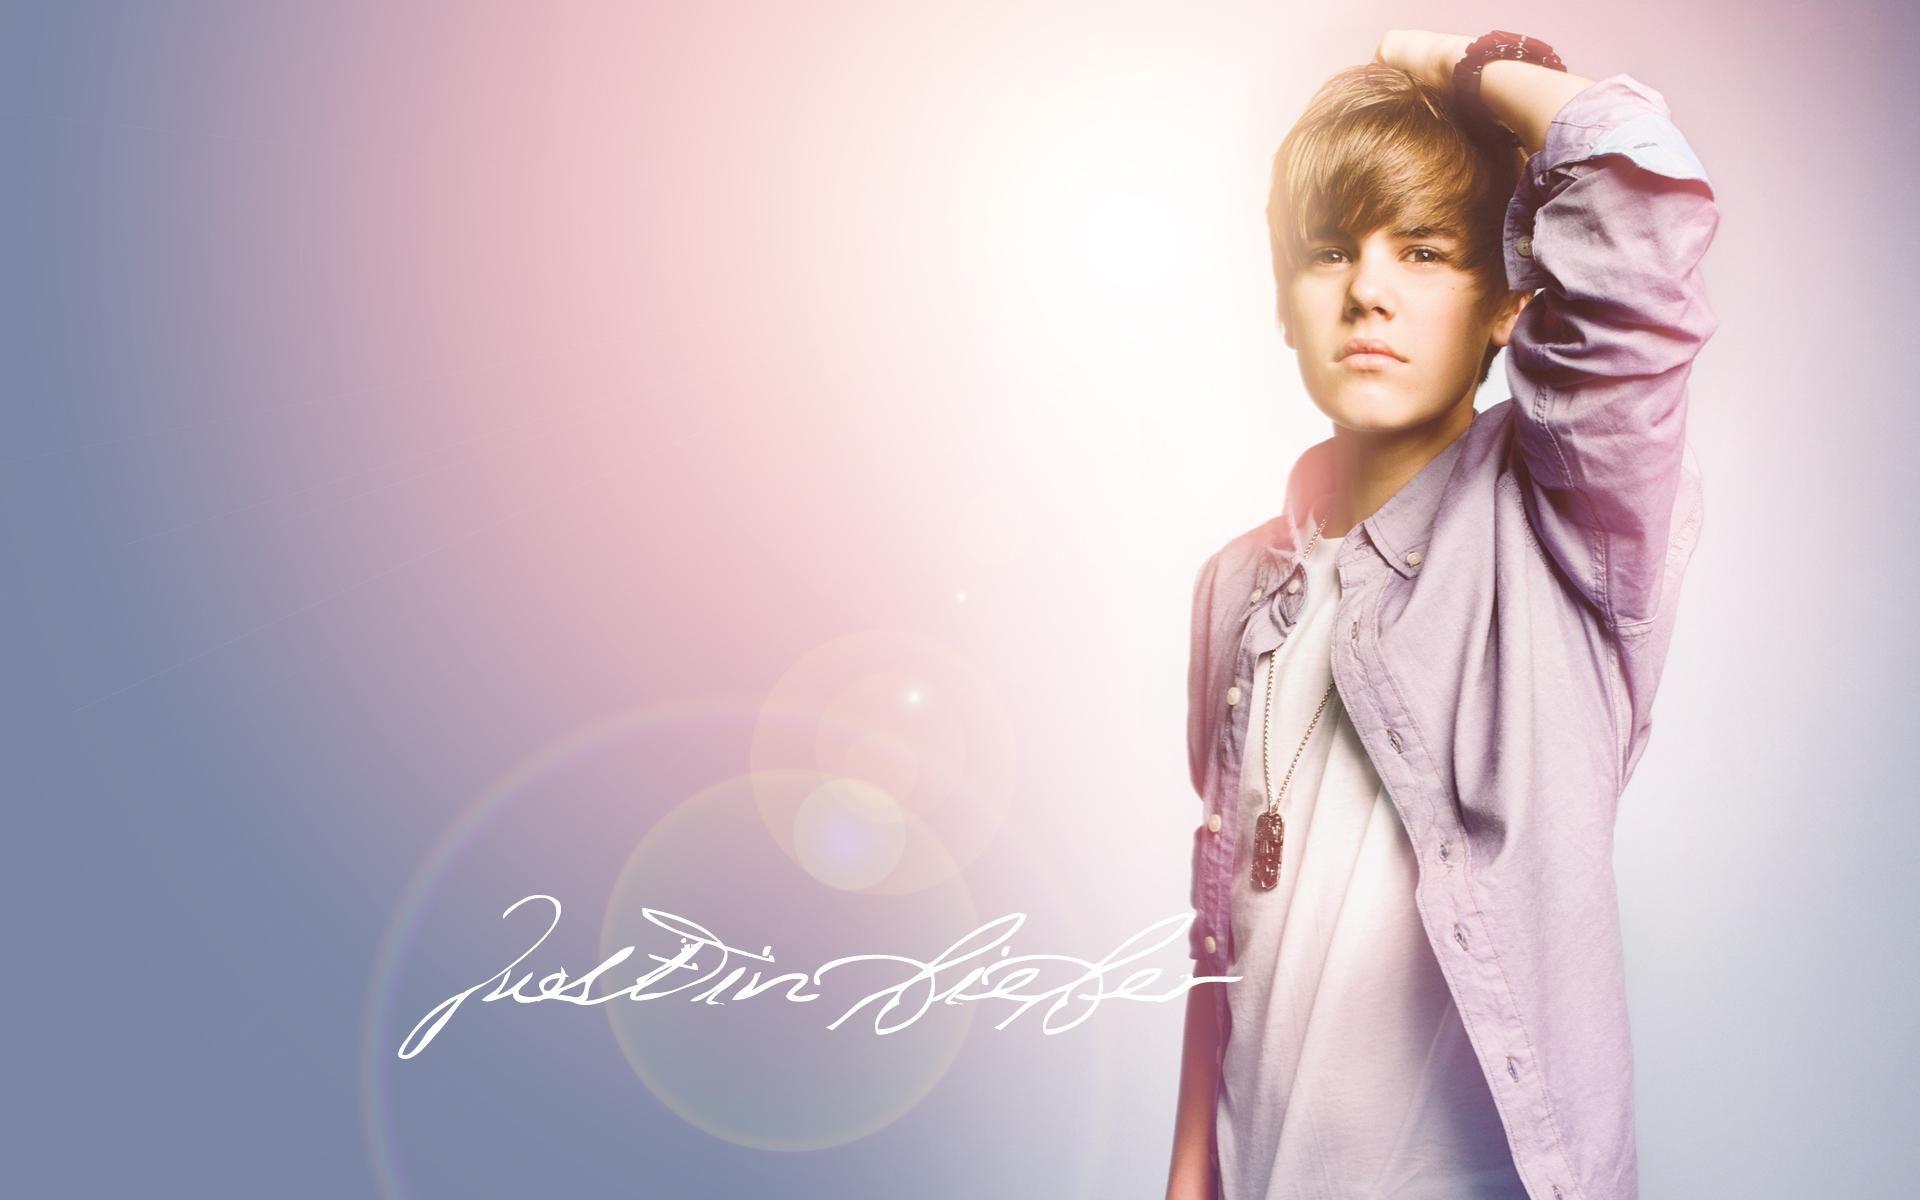 Justin Bieber Wallpaper HD